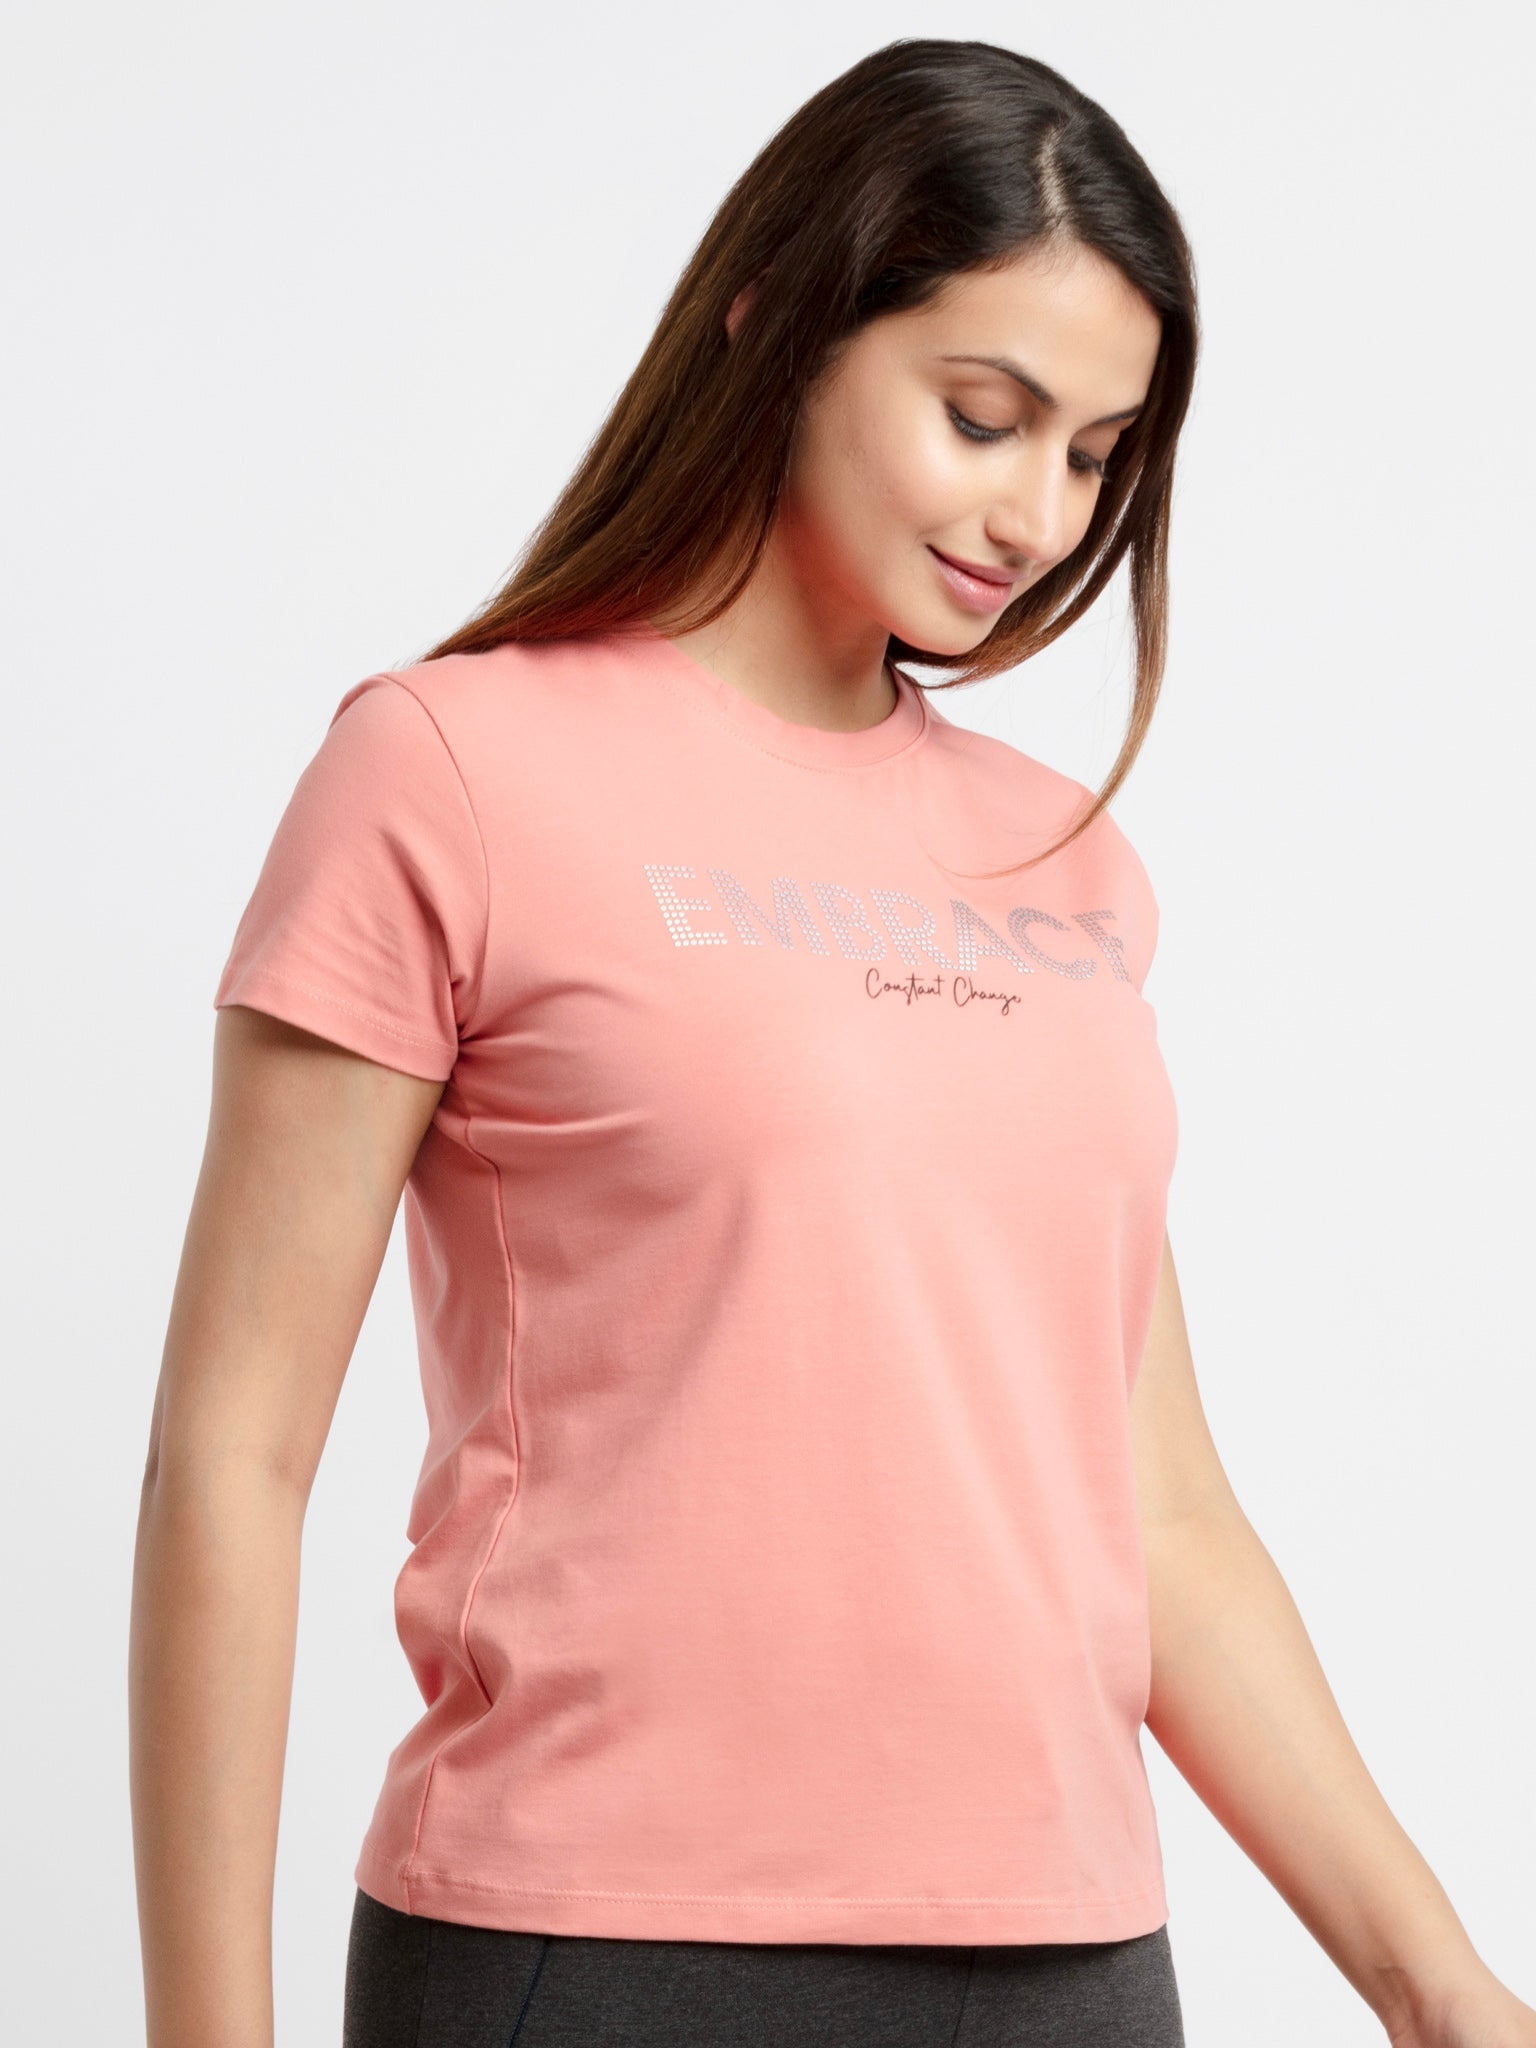 Women's Printed Round Neck T-Shirt